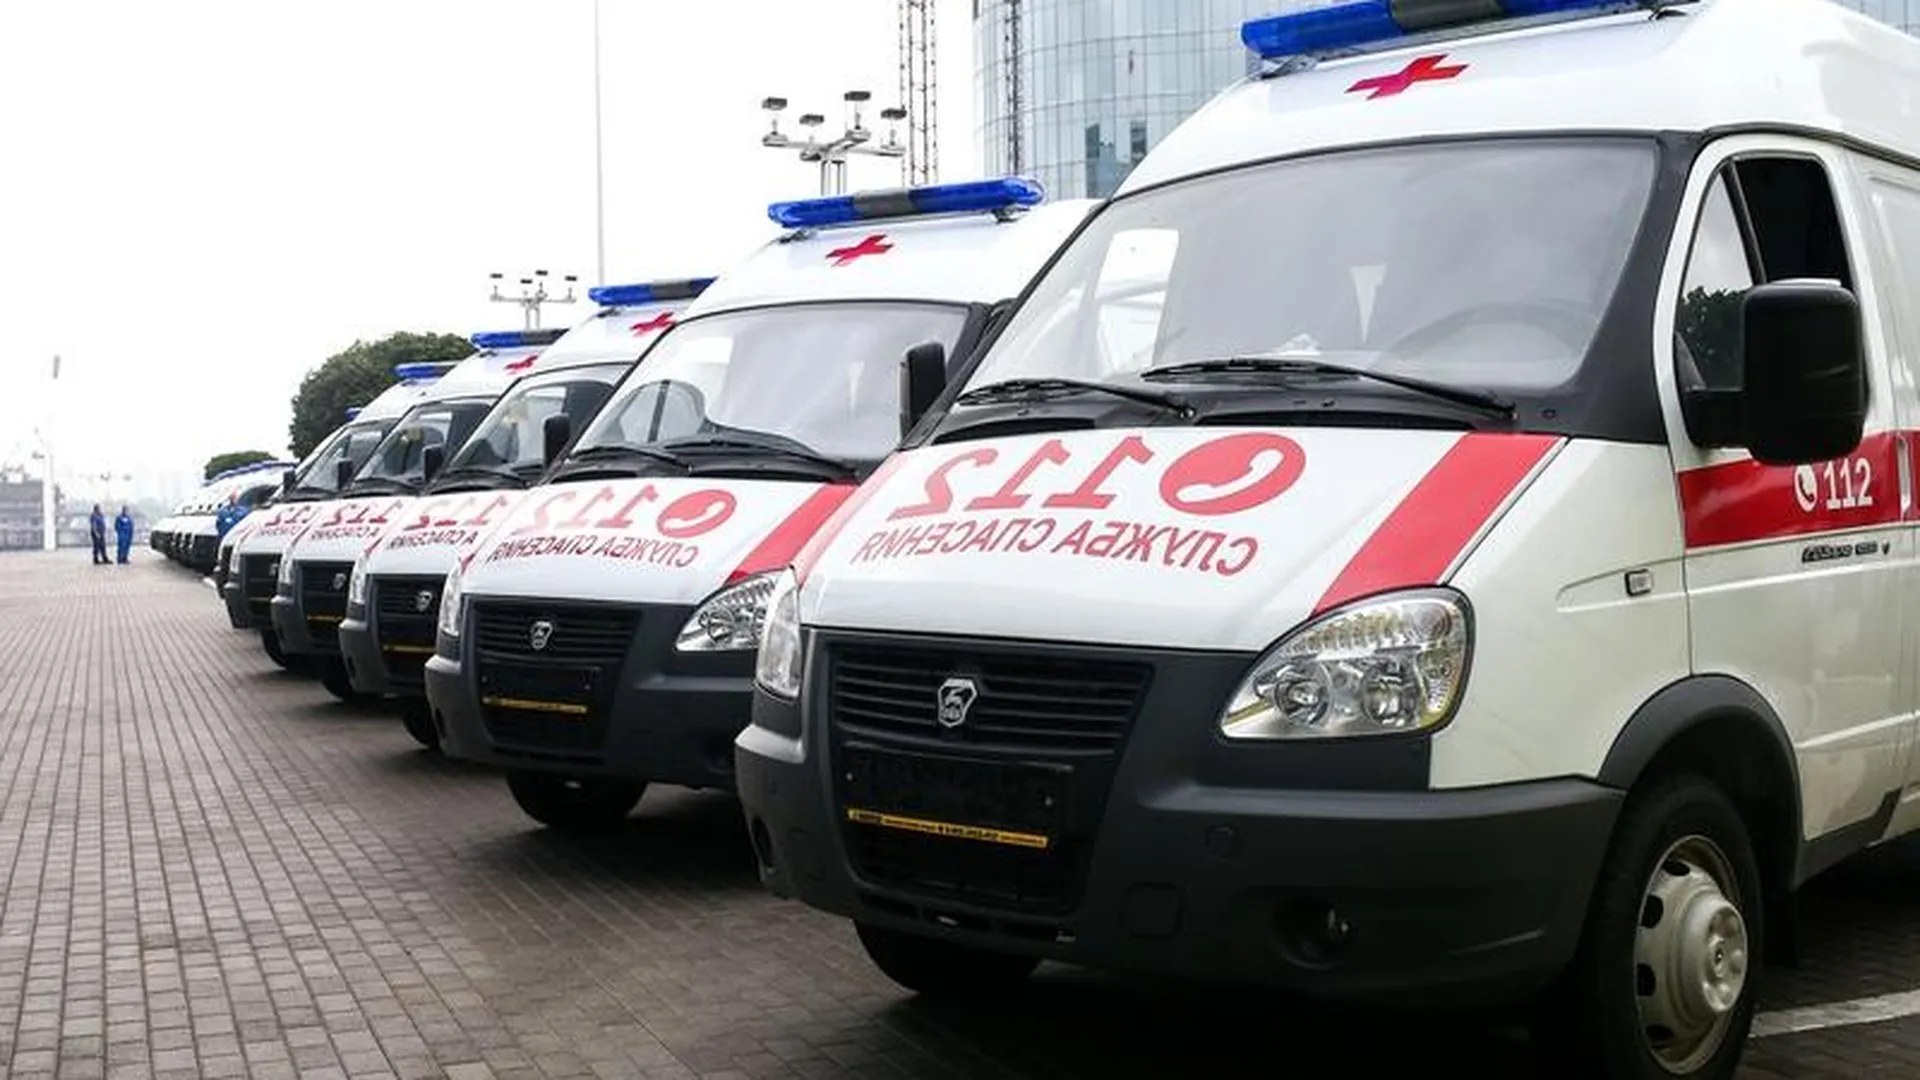 Три новых автомобиля «скорой помощи» поступили в Мытищи